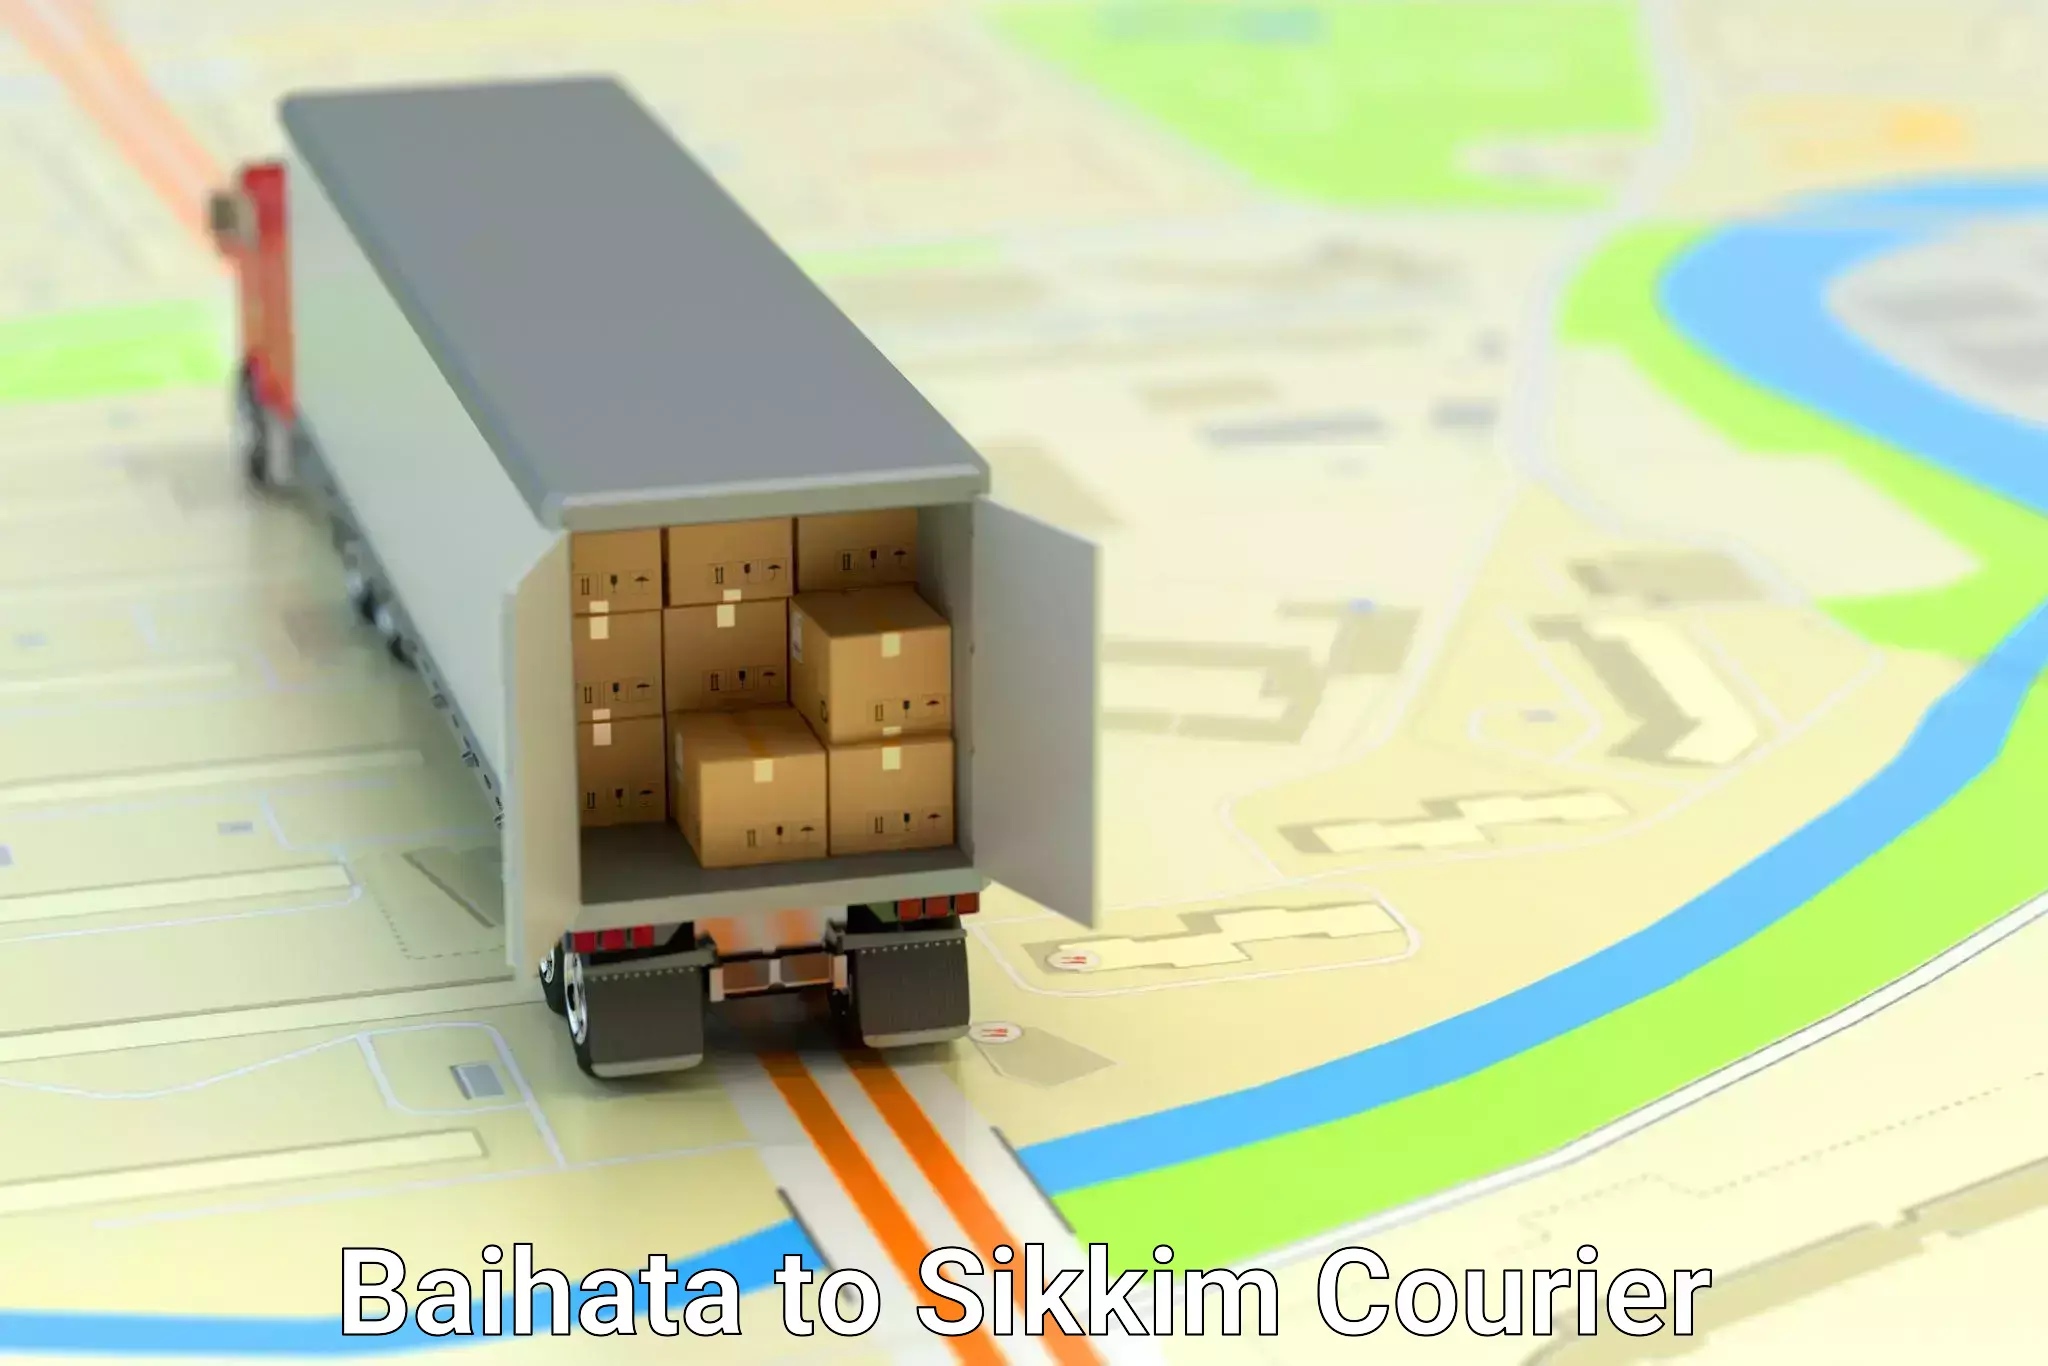 Comprehensive shipping network Baihata to Gangtok